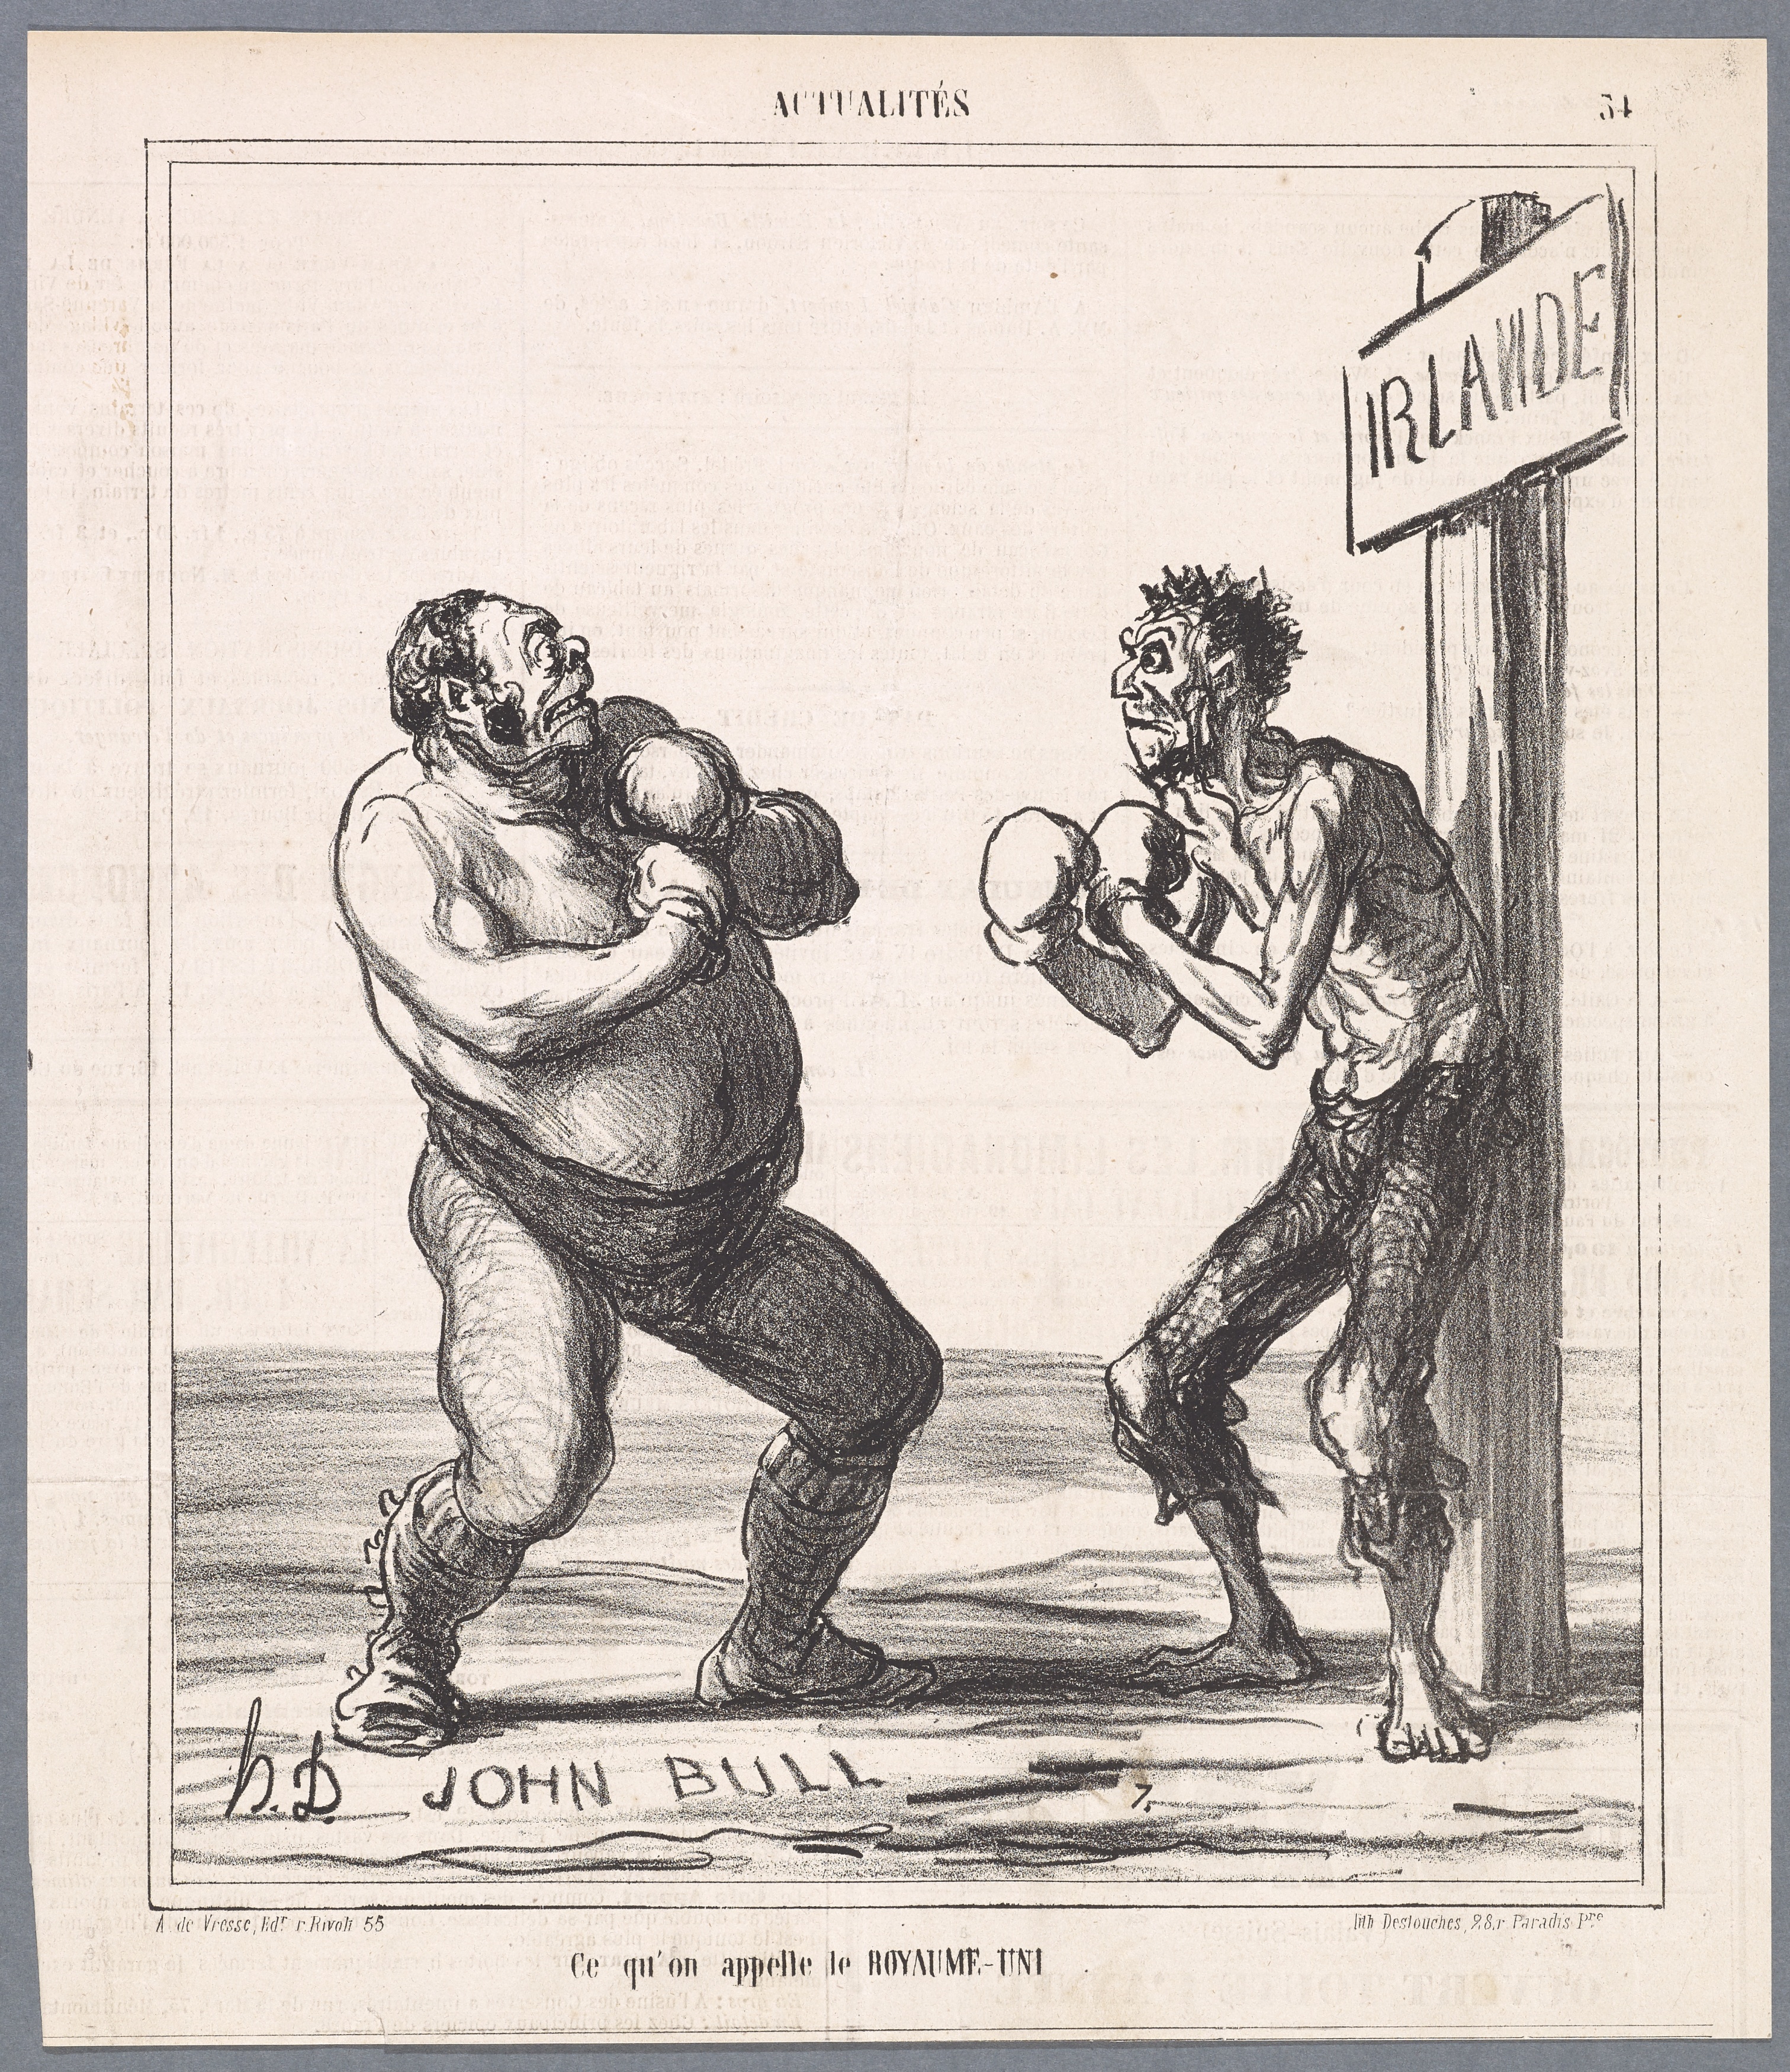 Honoré Daumier, *Ce qu’on appelle le Royaume-Uni*, Blatt 34 der Serie *Actualités*; erschienen in: *Le Charivari*, 21. März 1866